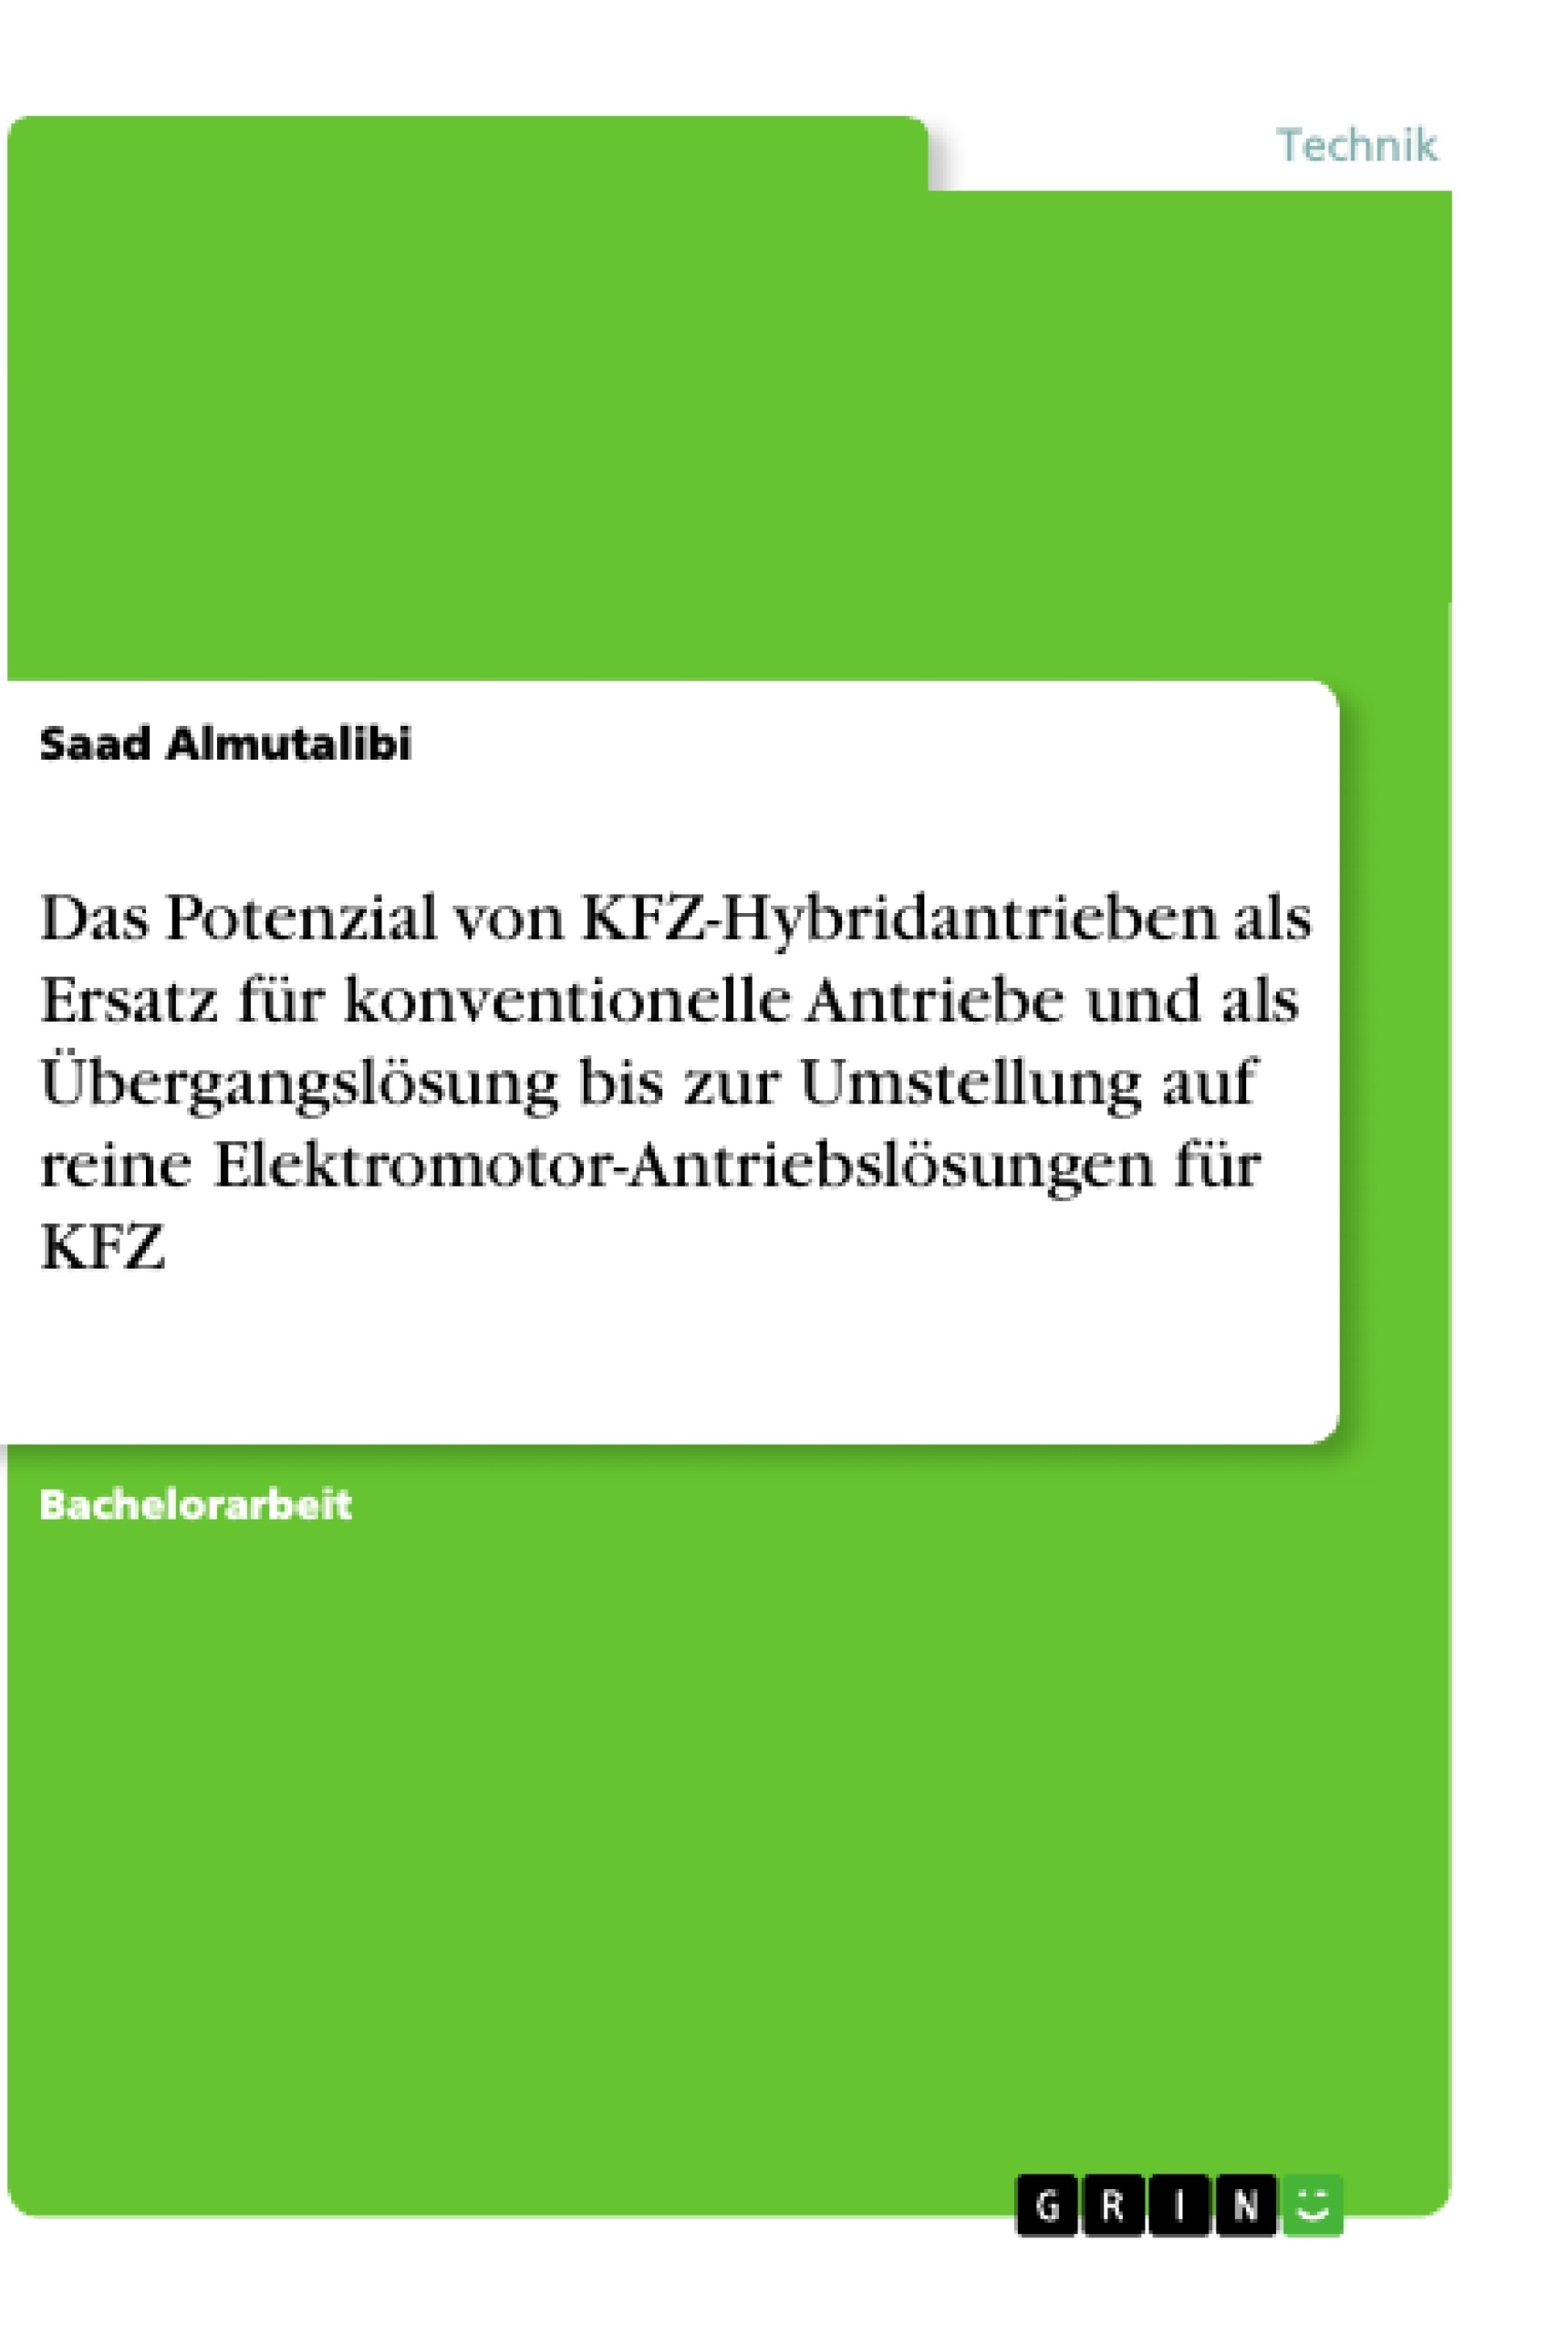 Titre: Das Potenzial von KFZ-Hybridantrieben als Ersatz für konventionelle Antriebe und als Übergangslösung bis zur Umstellung auf reine Elektromotor-Antriebslösungen für KFZ